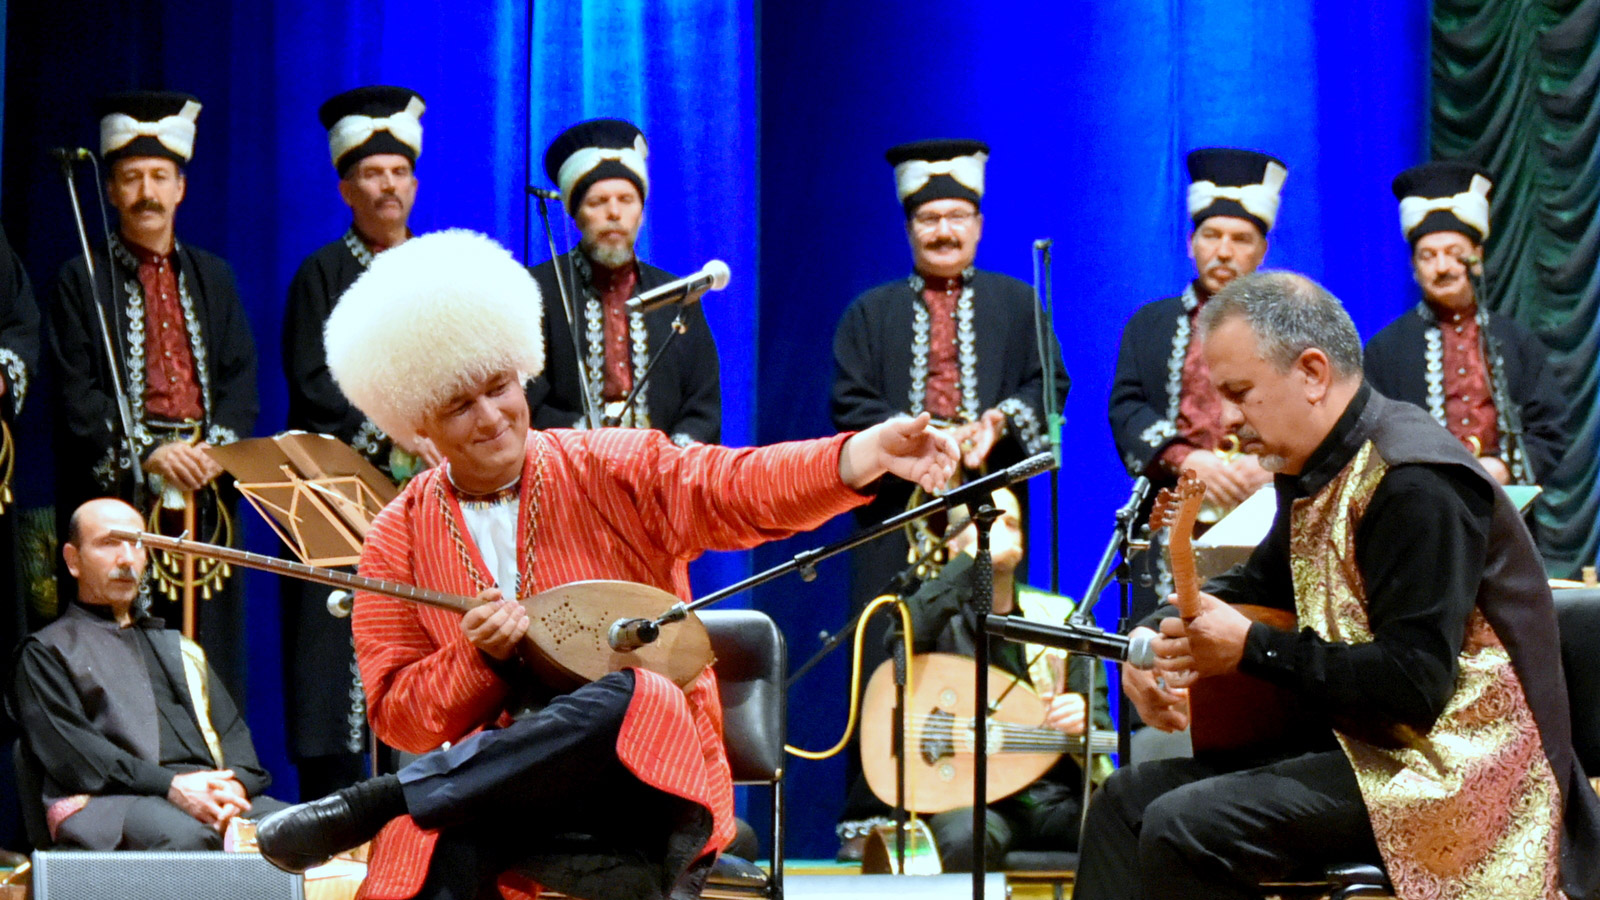 Туркмен песни. Бахши Туркменистана. Духовная культура Туркменистана дутар. Театр Махтумкули в Ашхабаде. Фольклор Туркмении.